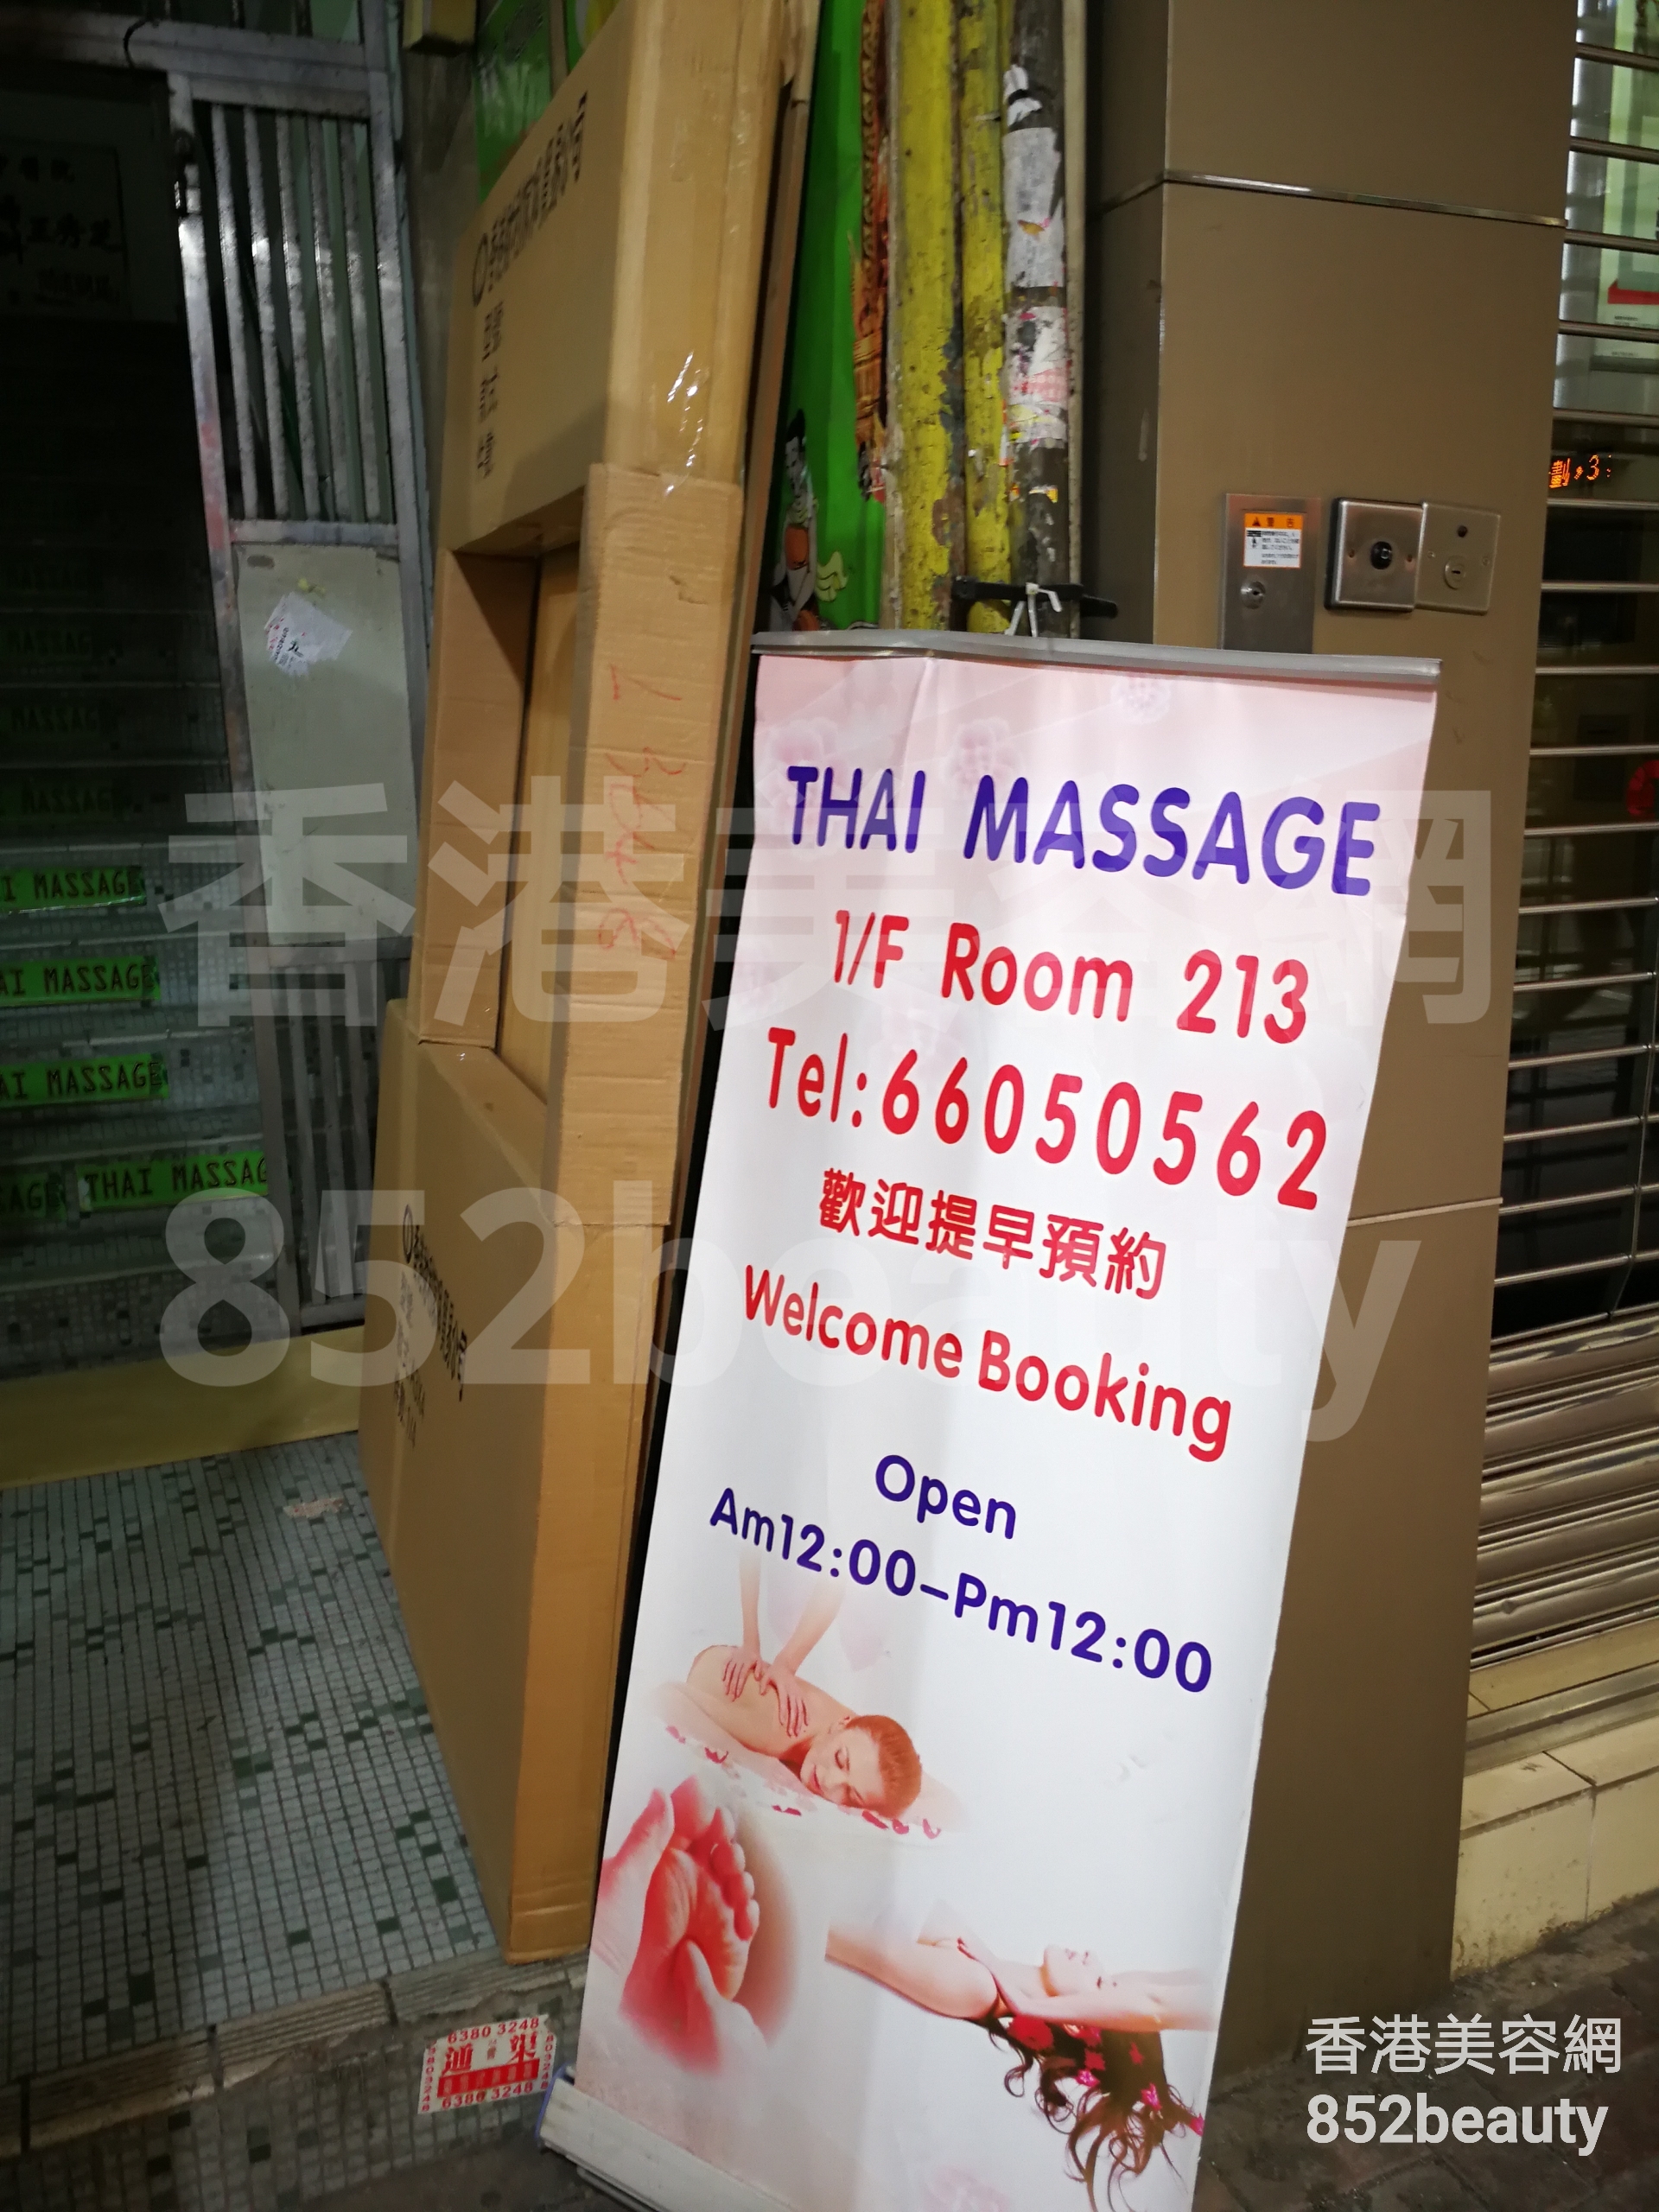 美容院 Beauty Salon: Thai Massage